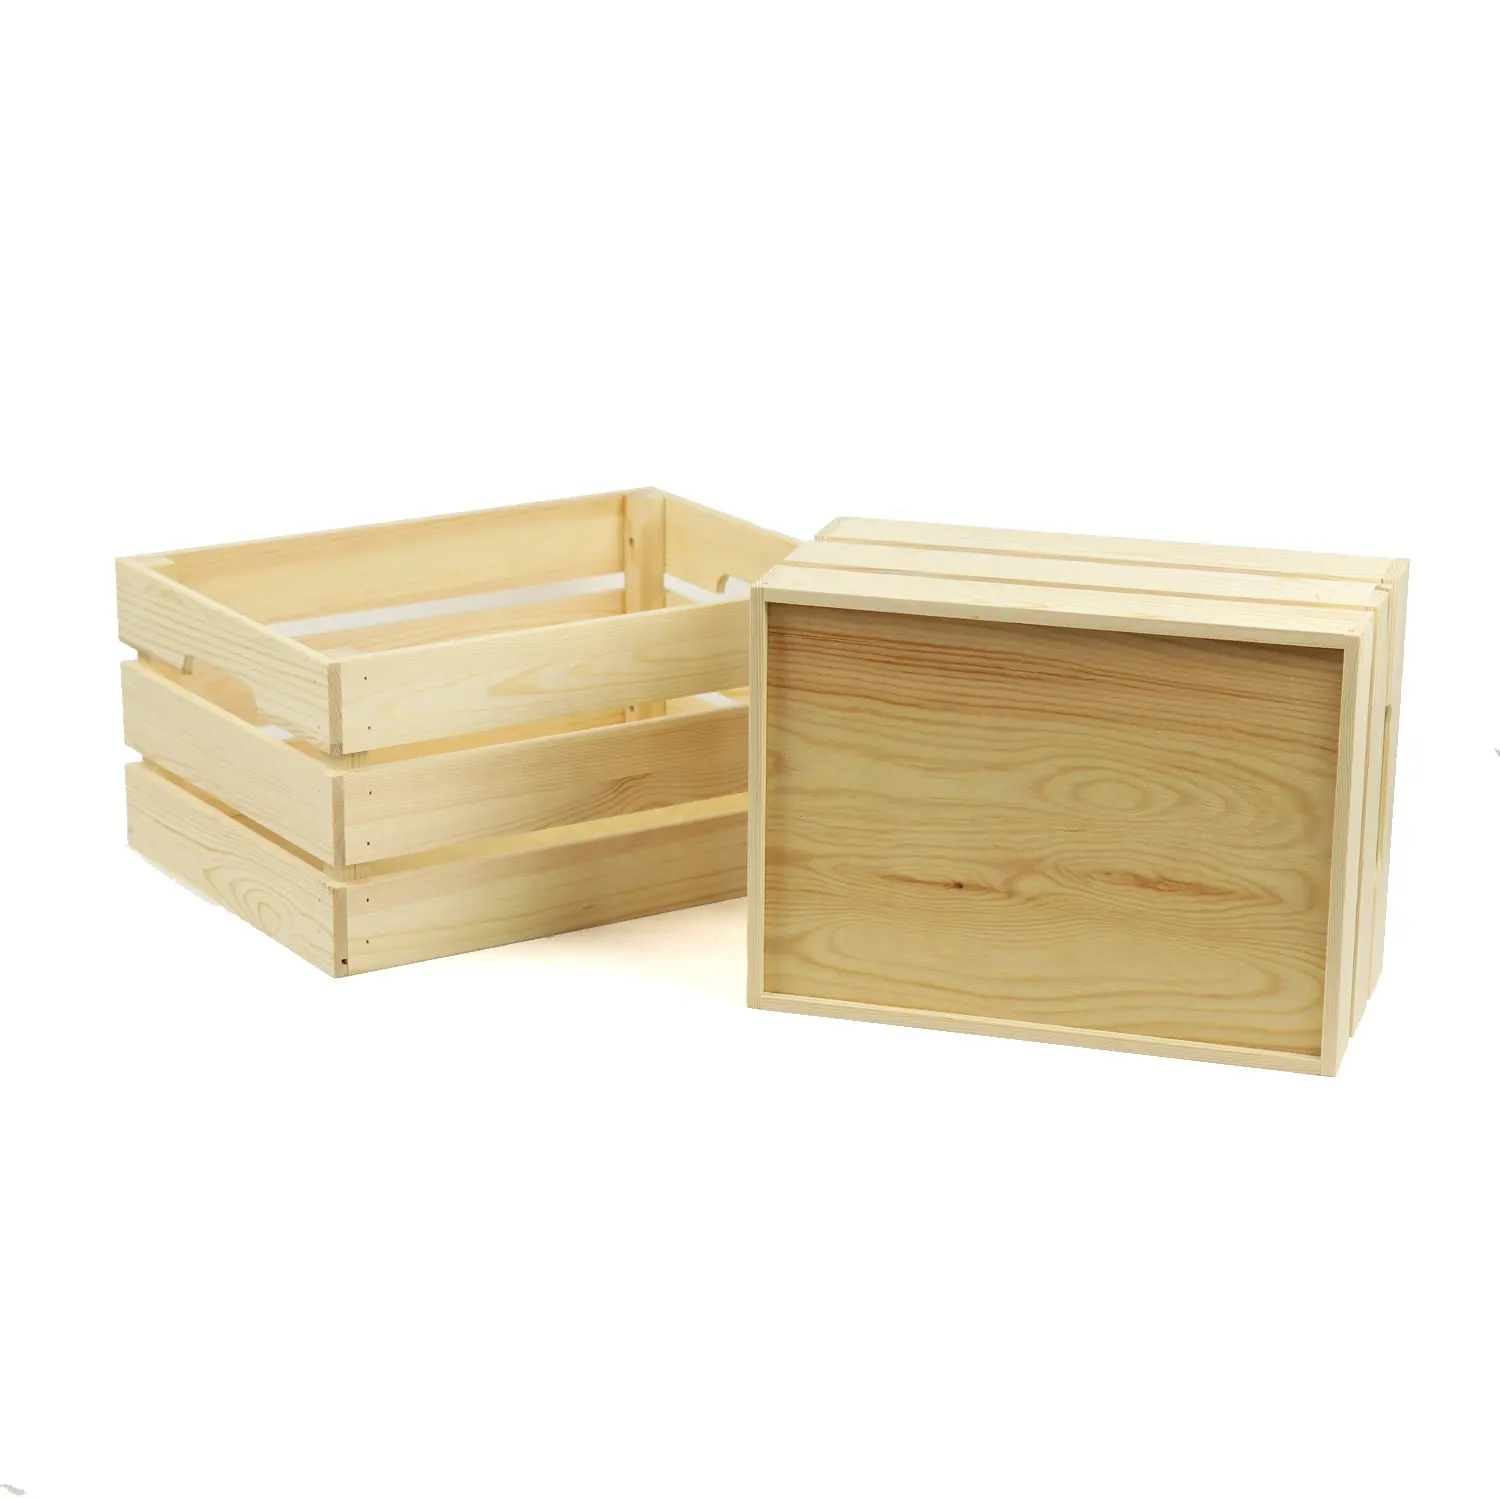 Grosir kotak kayu kecil antik peti kayu belum selesai kotak penyimpanan kayu buah sayuran dapat ditumpuk